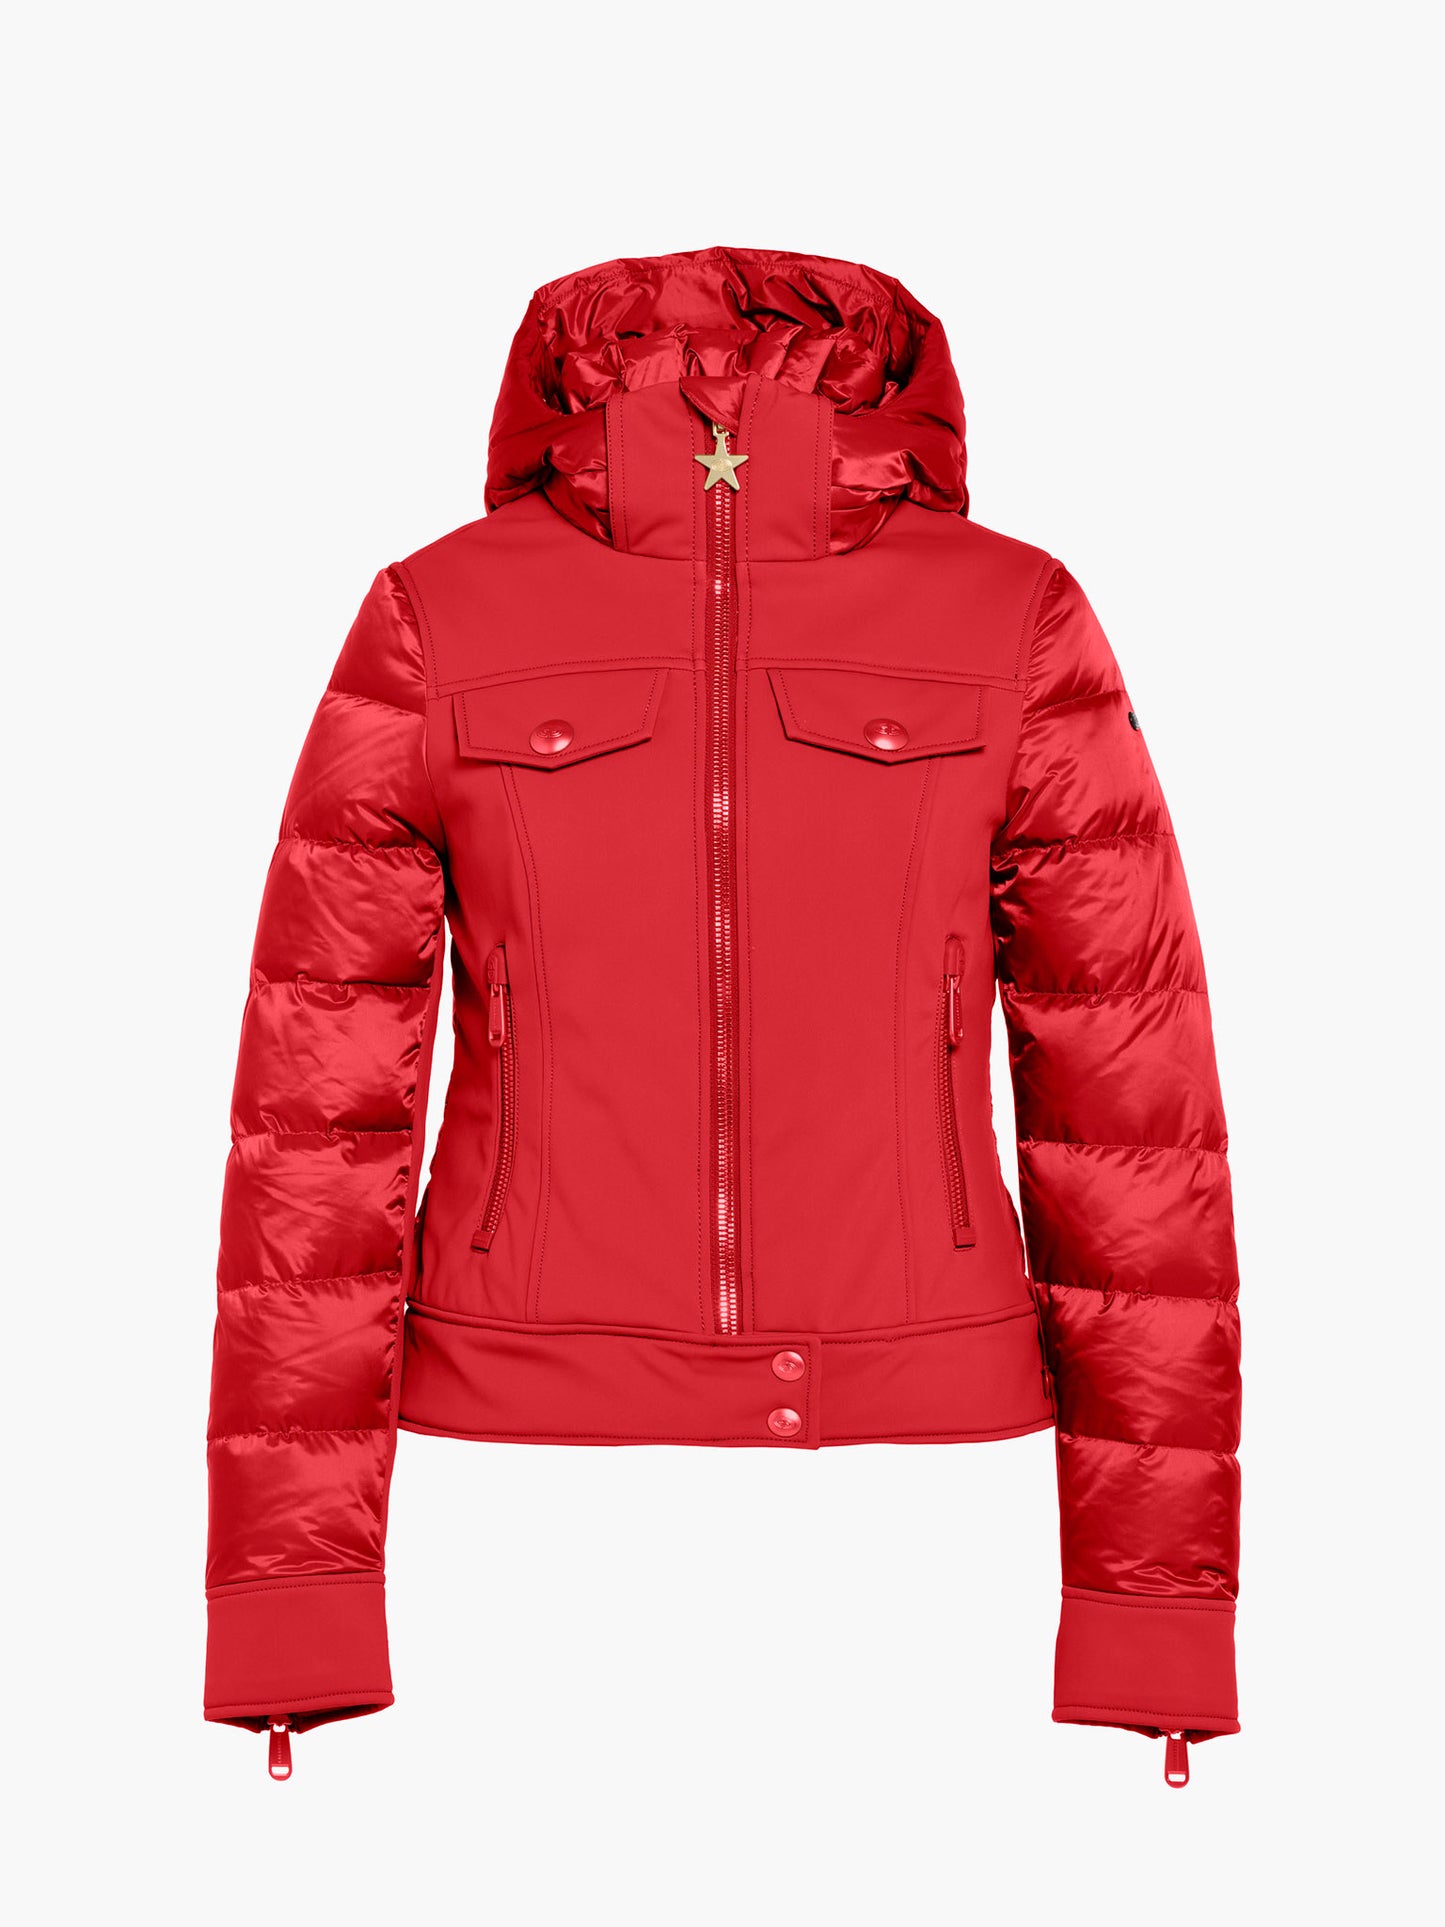 CANYON ski jacket